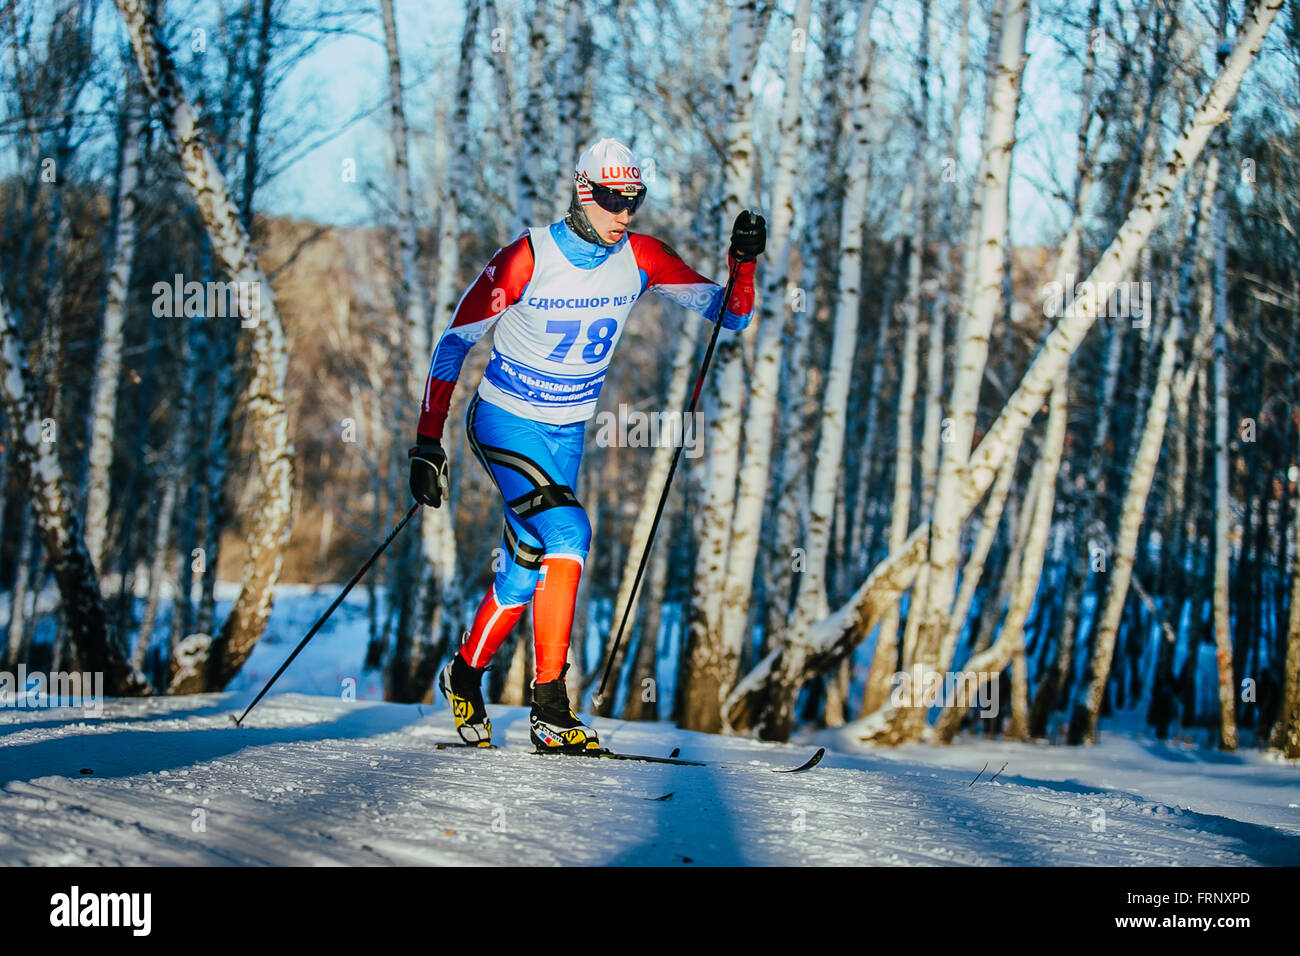 Athlète masculin jeunes skieurs en hiver course forest style classique équitation montée au cours du championnat de France de cross-country Banque D'Images